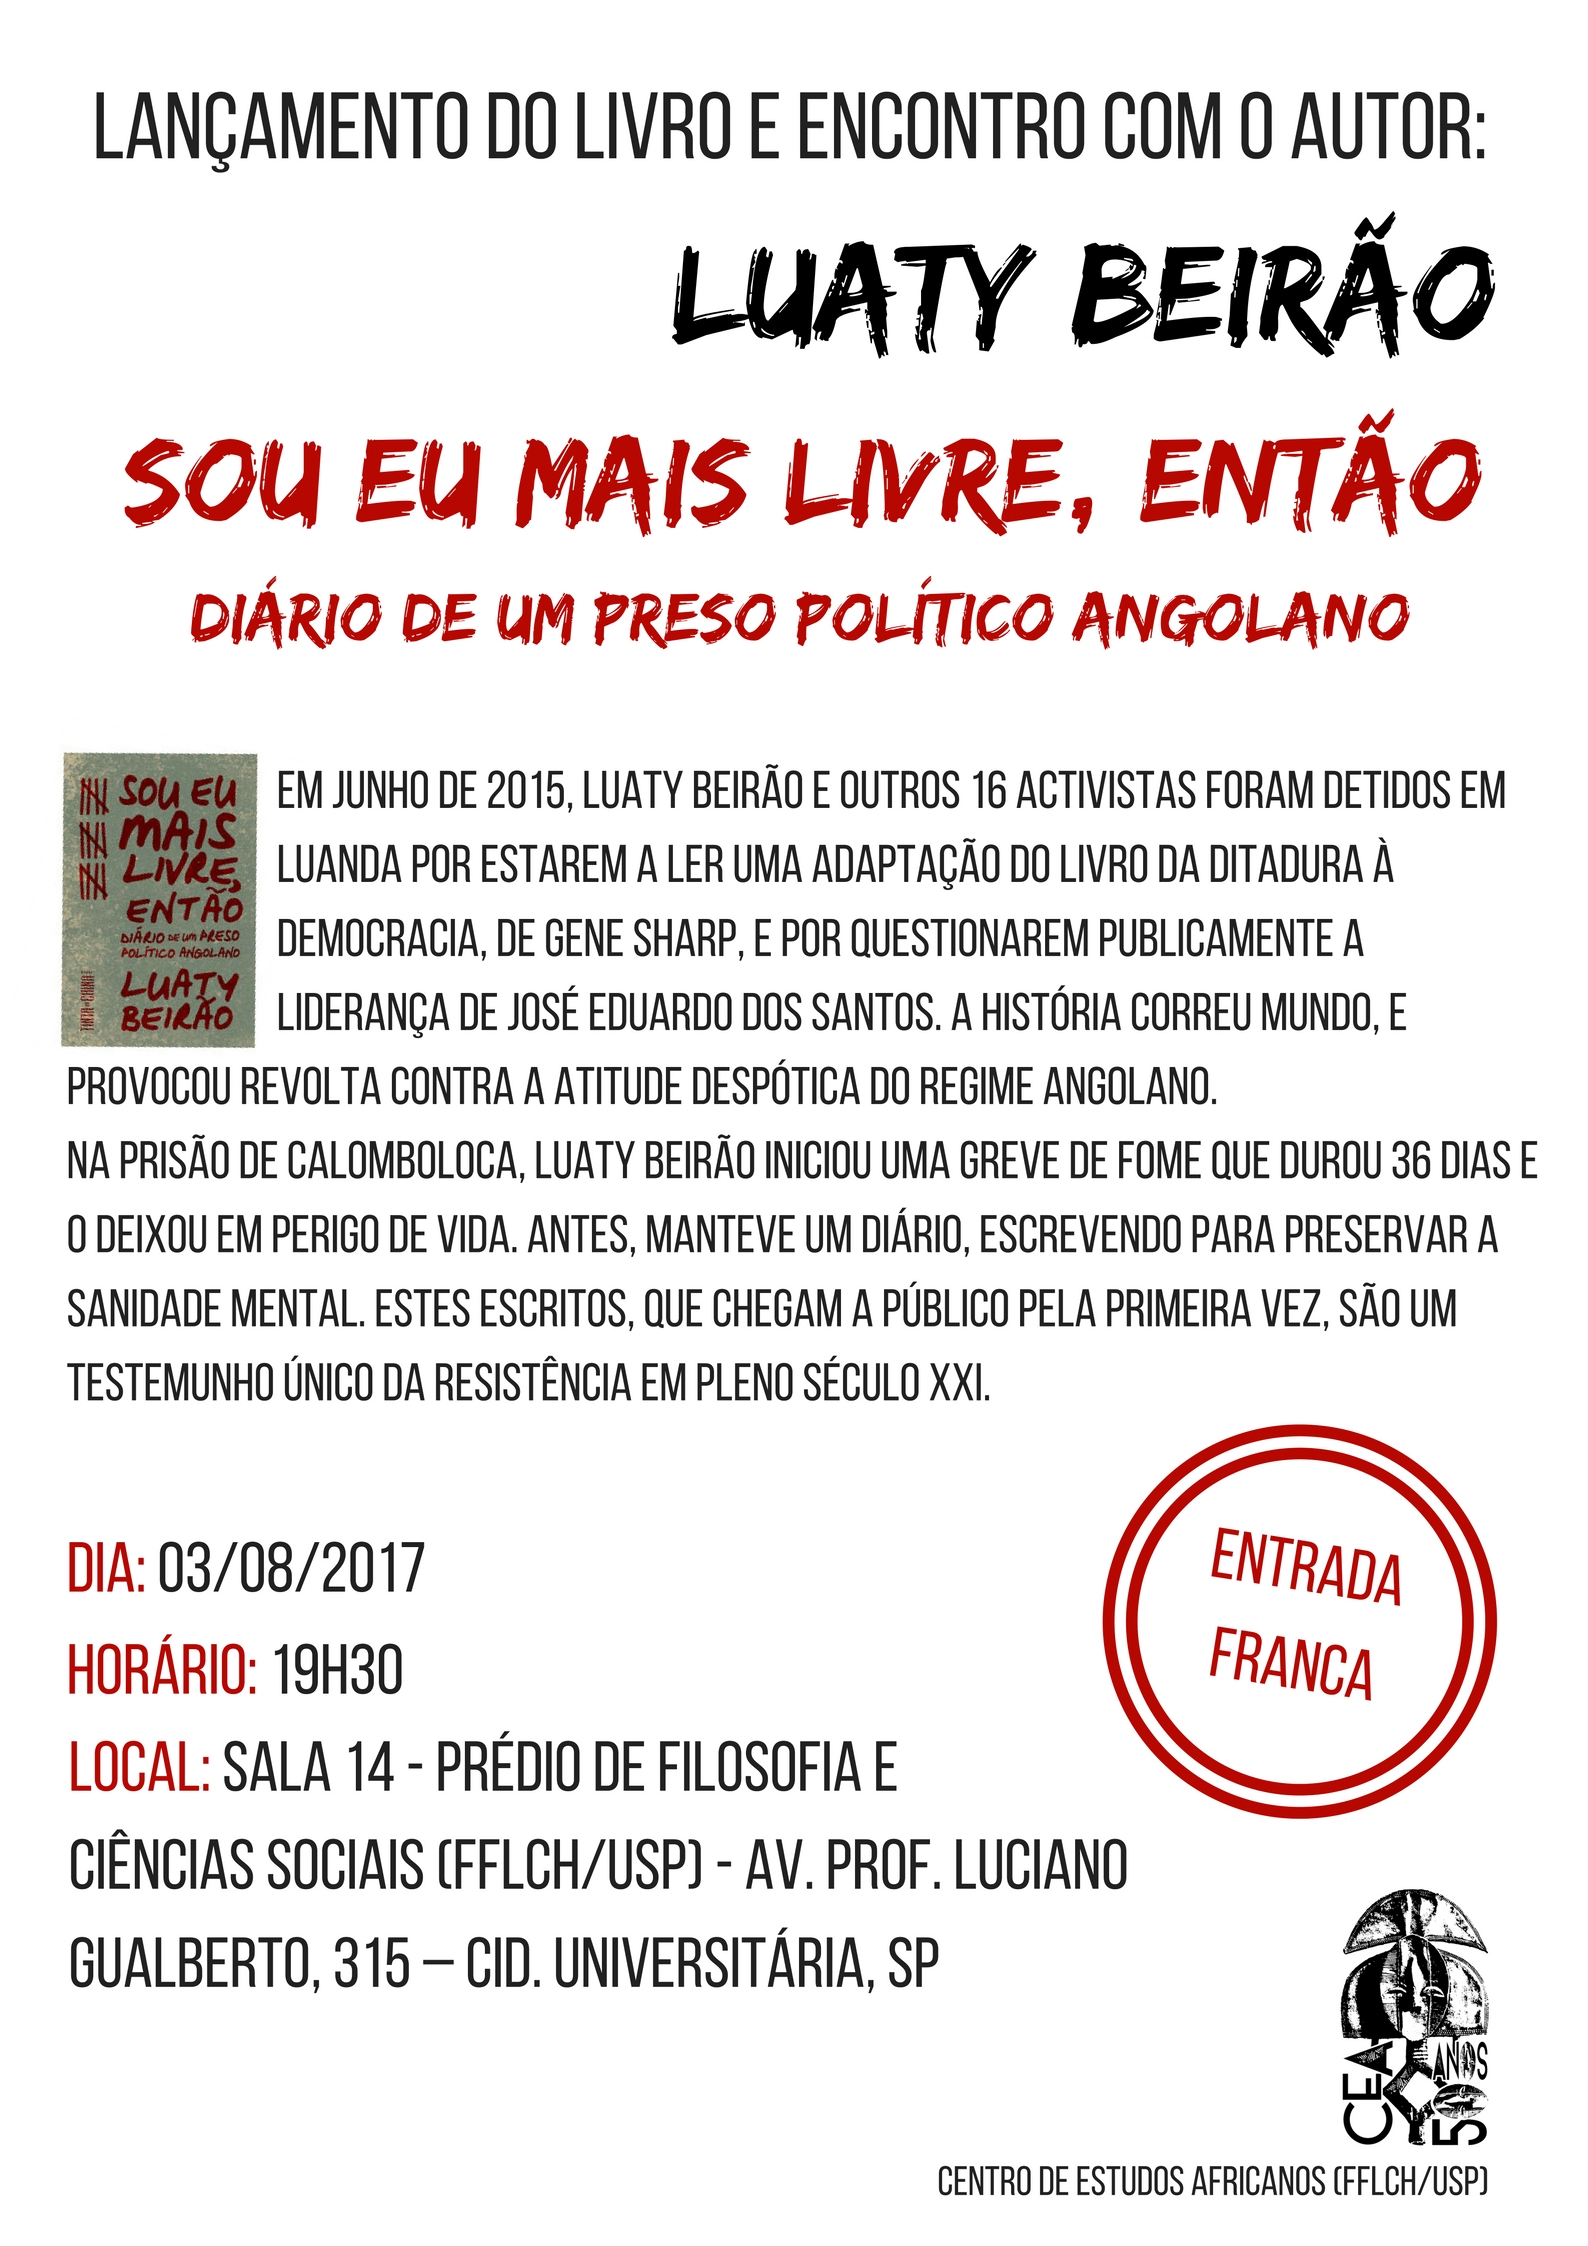 Lançamento do livro "Sou eu mais livre, então - Diário de um preso político angolano" de Luaty Beirão